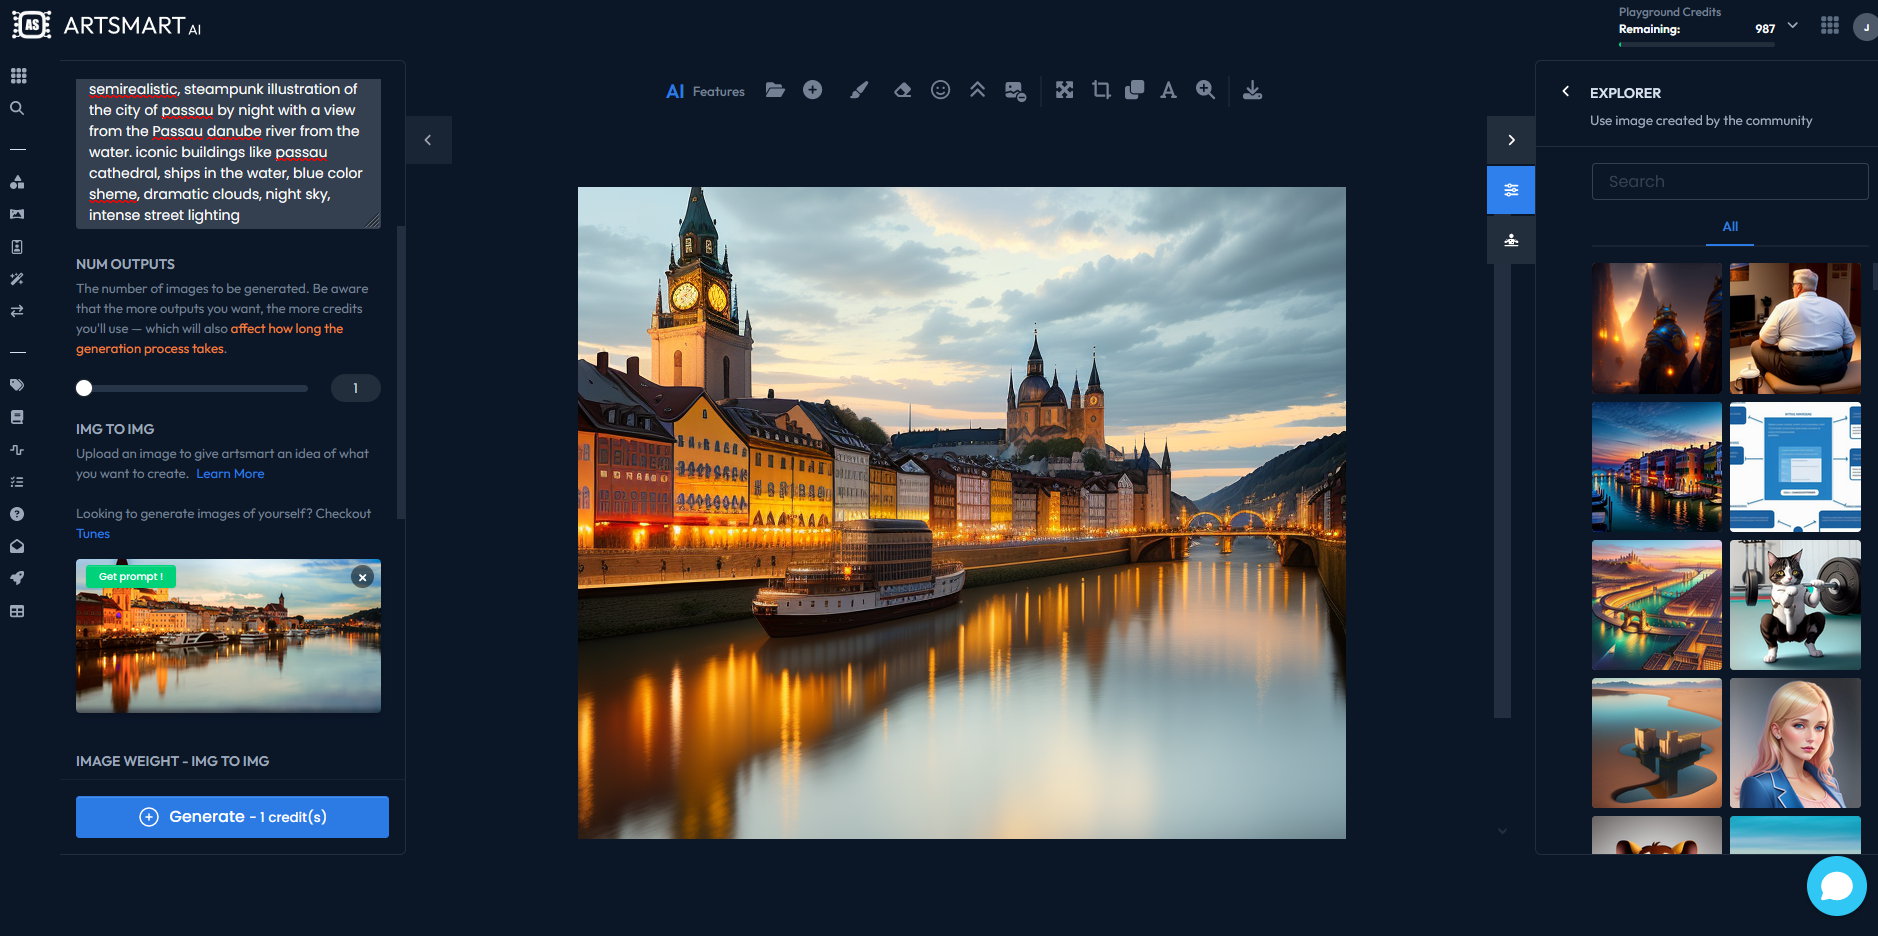 KI-Bild von Passaus Donaupromenade mit Dom im Hintergrund, erstellt mit der Image-to-Image Funktion